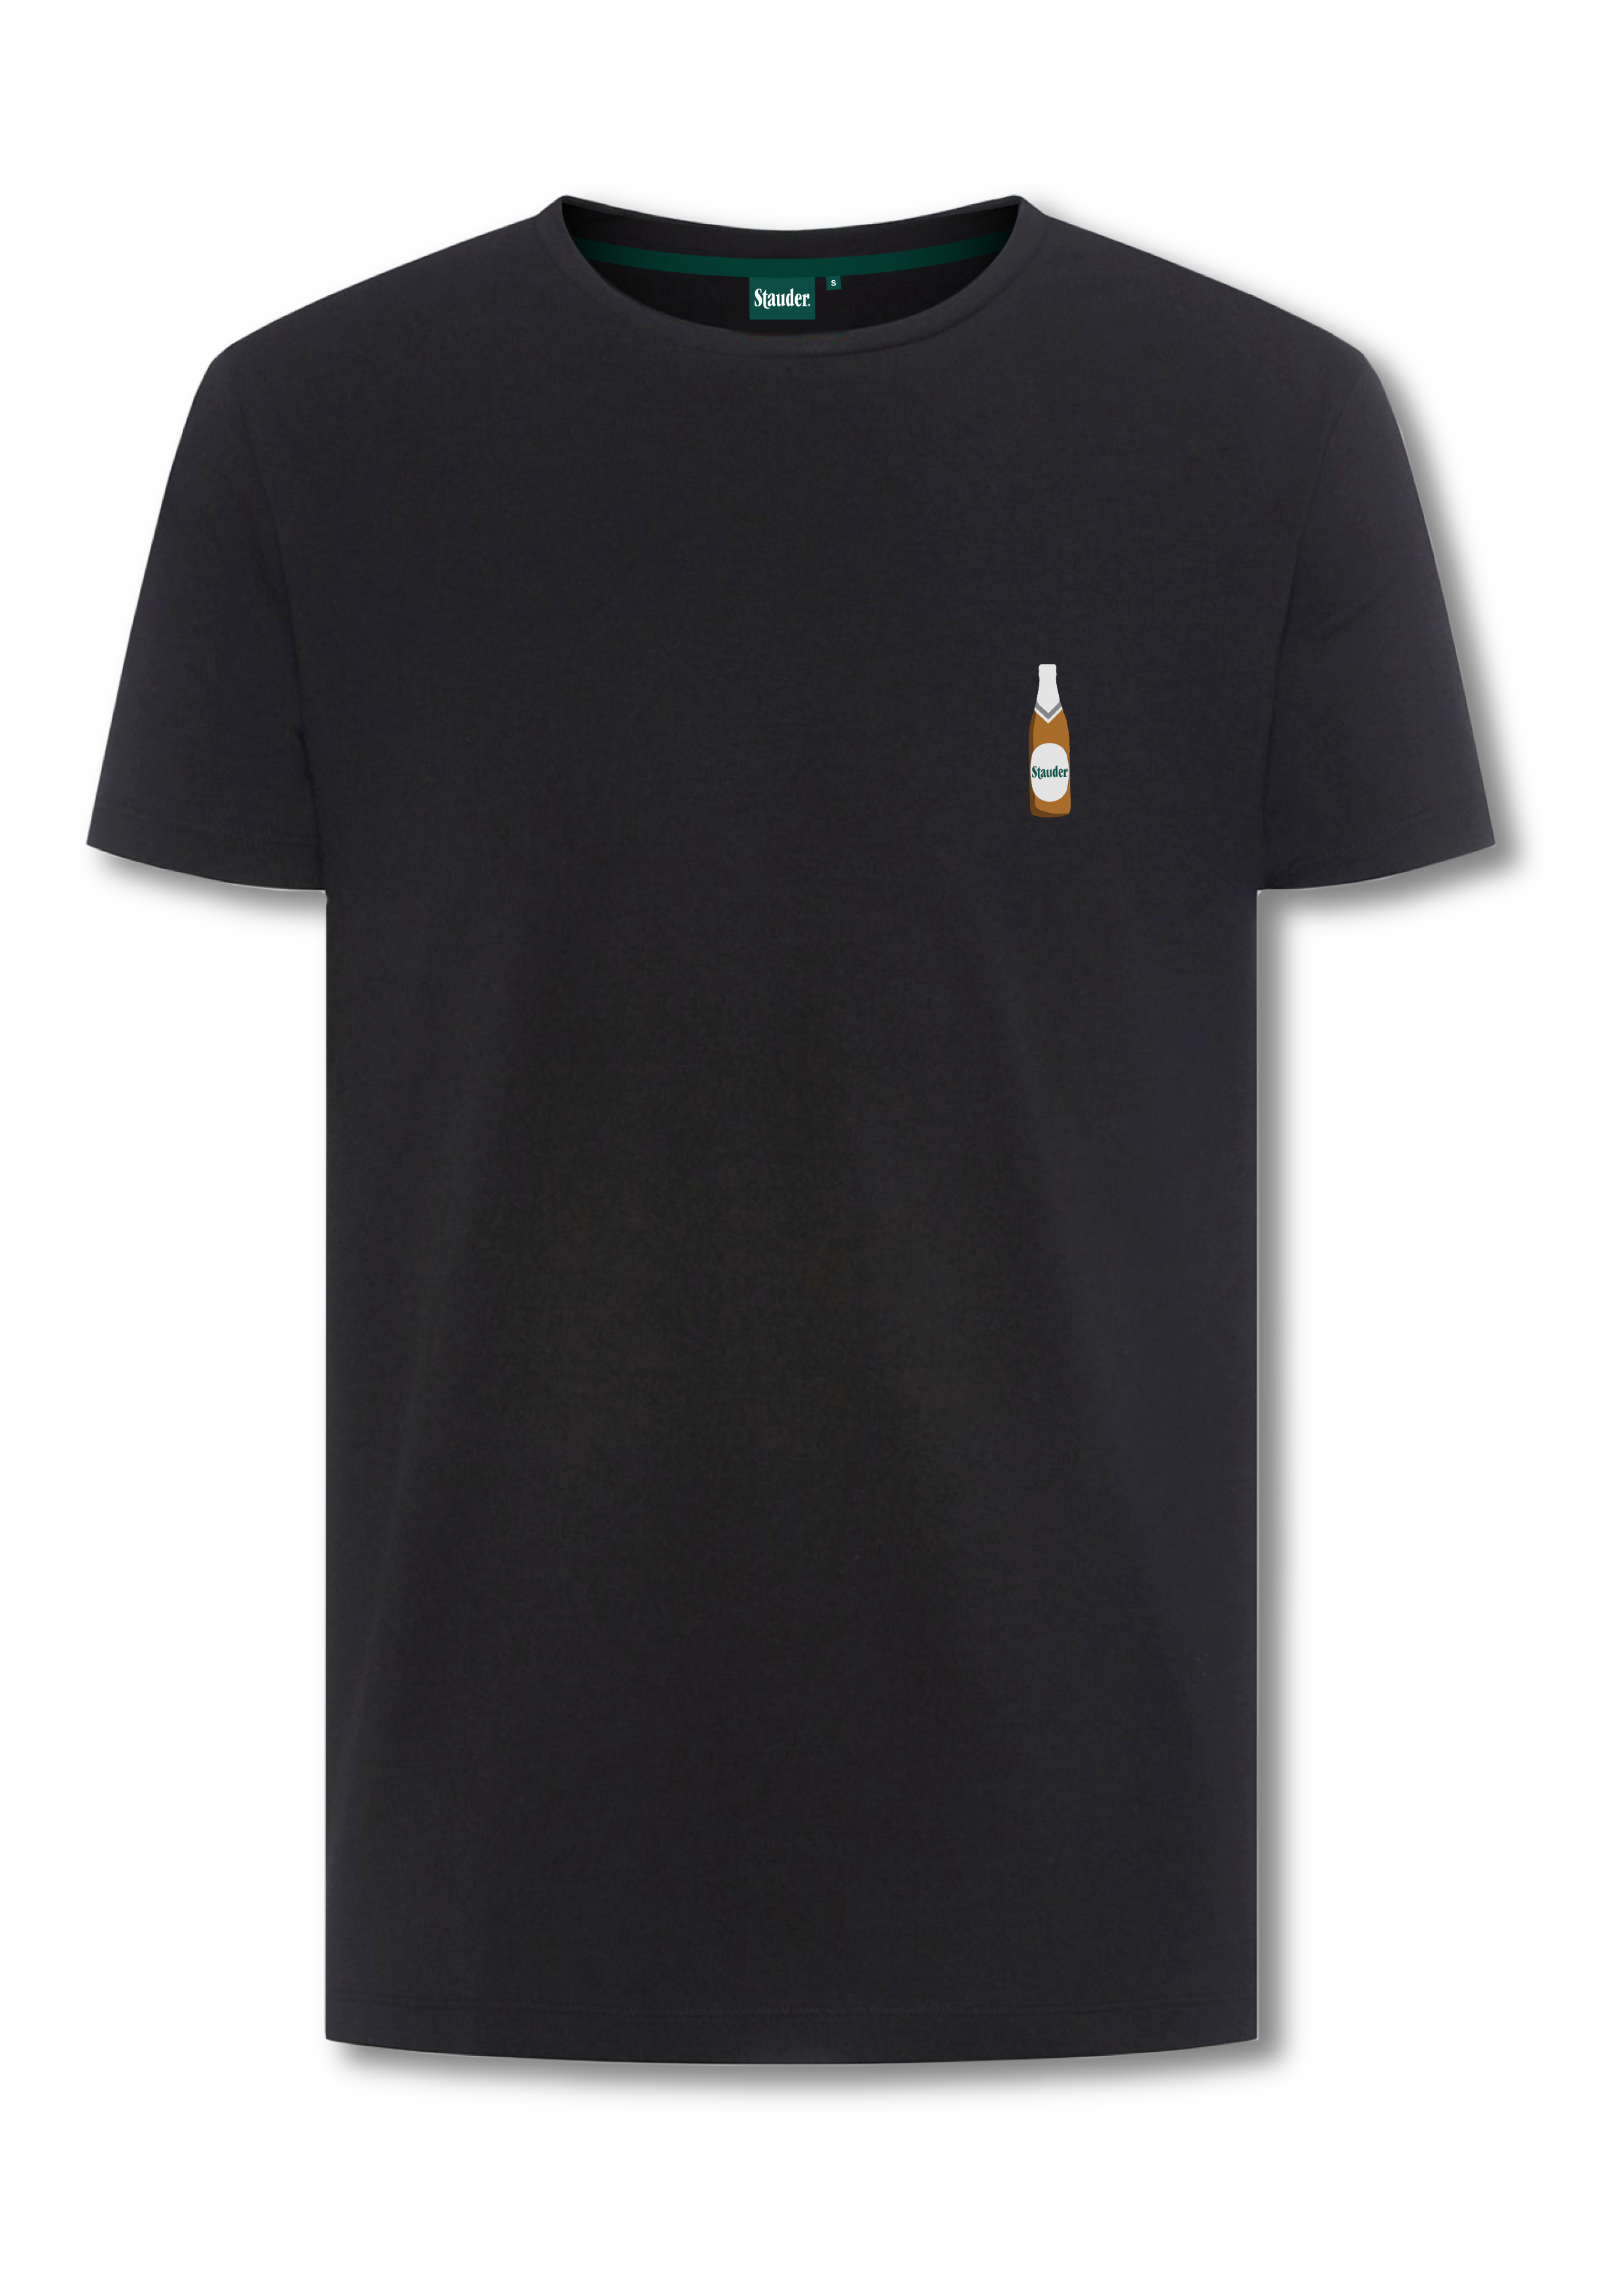 Stauder T-Shirt mit Stick "Flasche"  